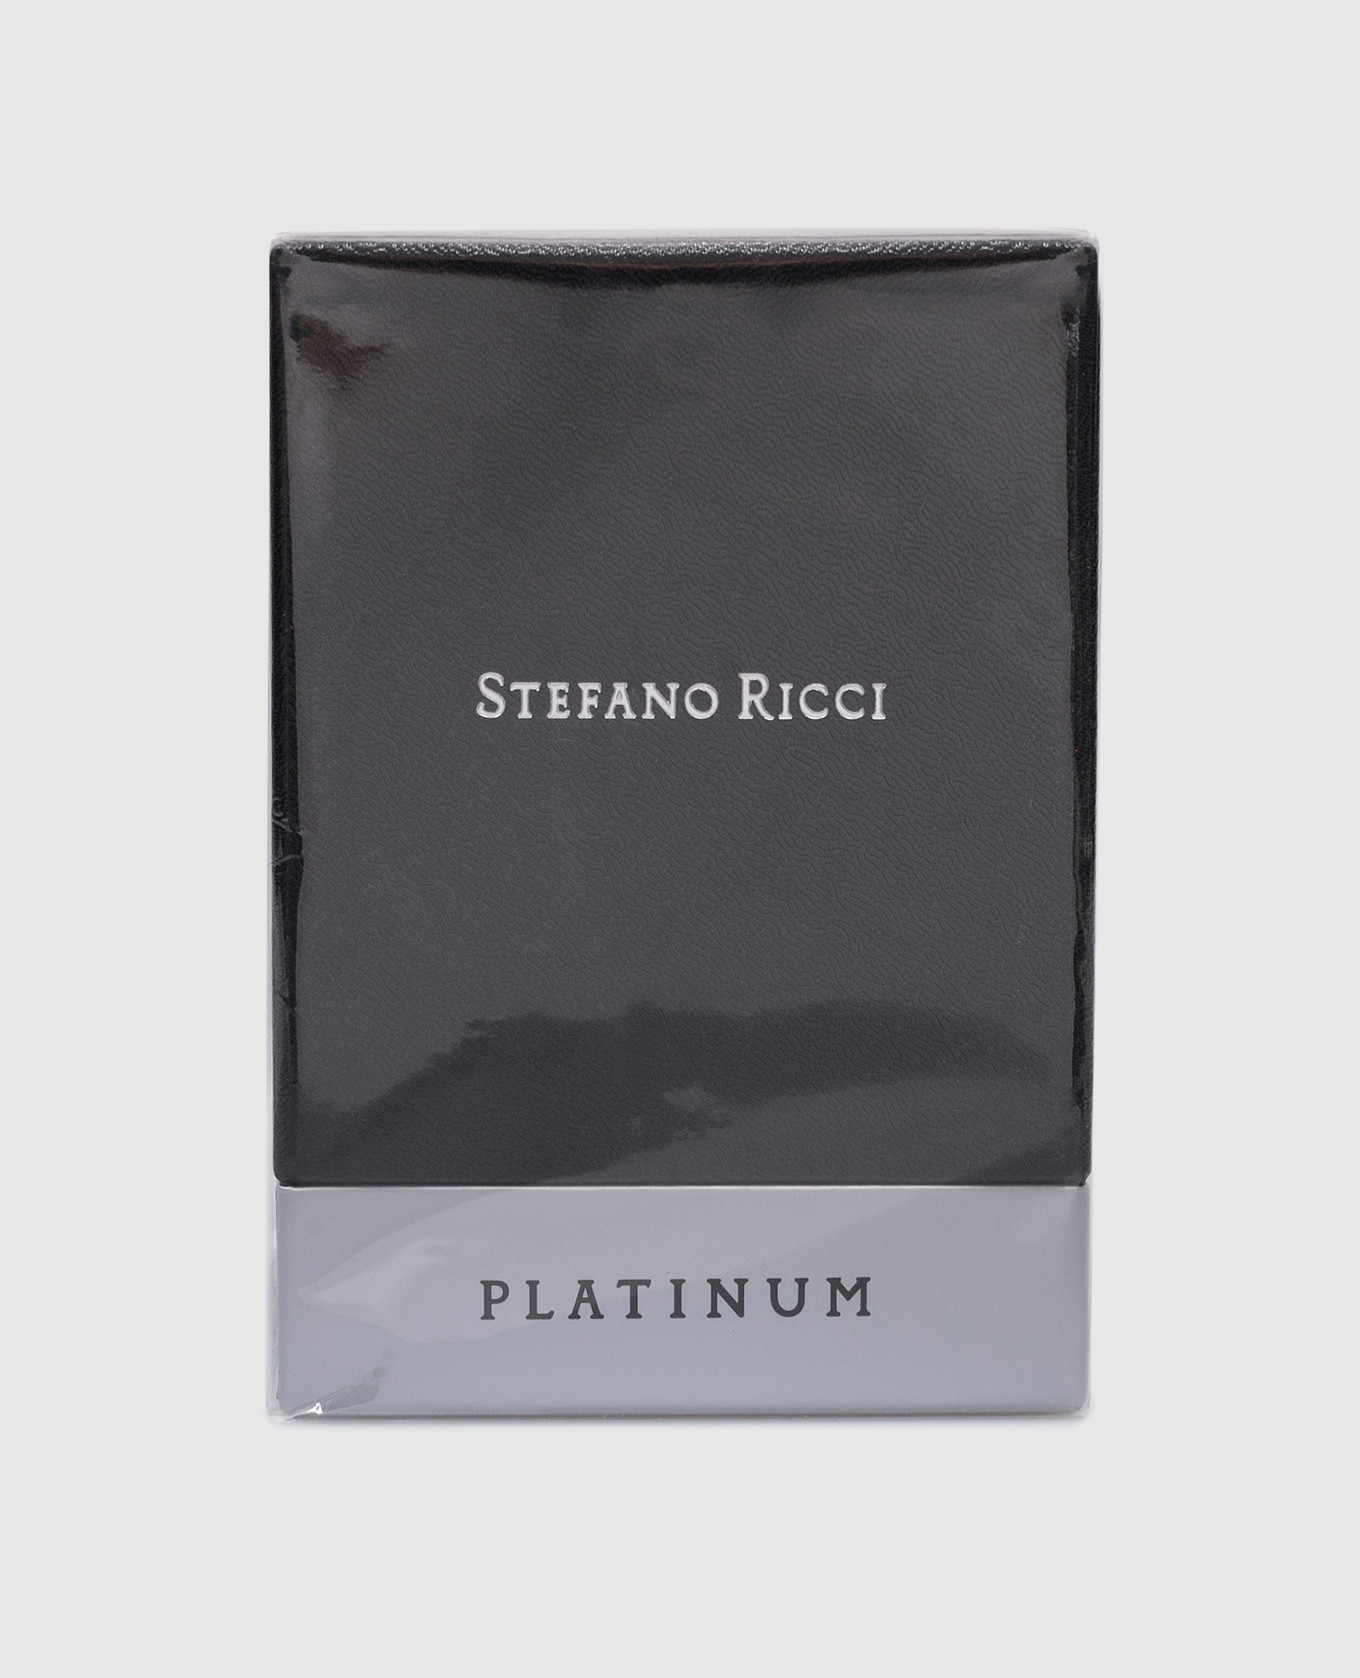 Perfume Platinum 125 ml